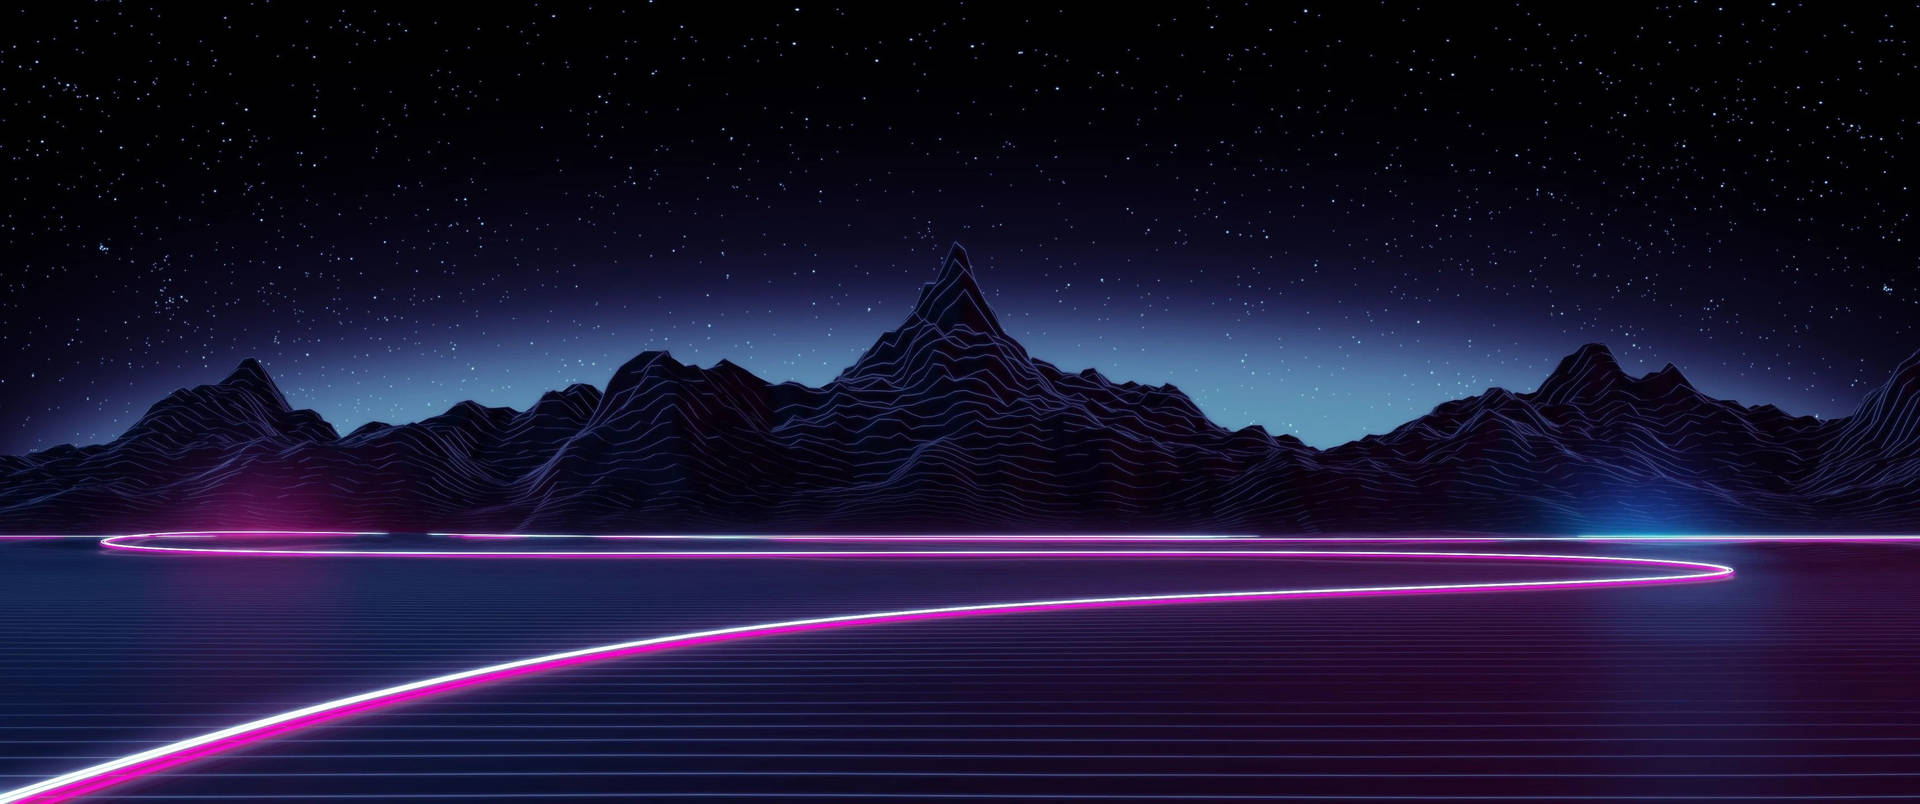 Neon Mountain 4k Lo Fi Background